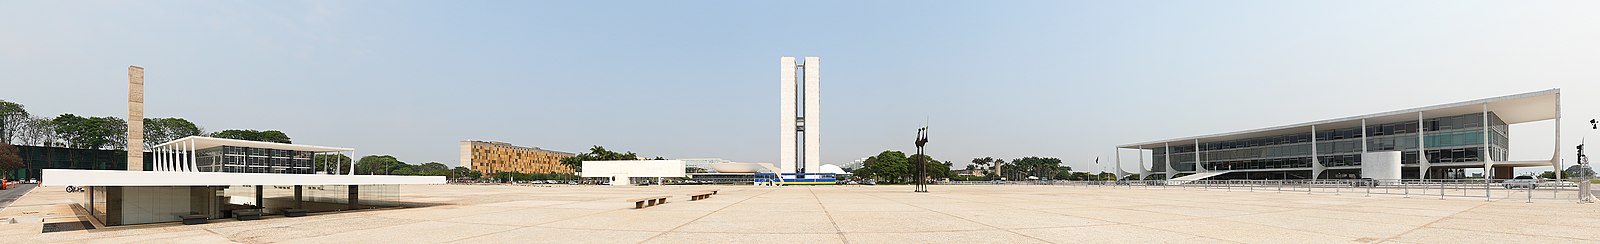 Vista panorâmica da Praça dos Três Poderes: à esquerda (sul) o poder judiciário (Supremo Tribunal Federal), no centro o poder legislativo (Congresso Nacional) e à direita a sede do poder executivo (Palácio do Planalto).